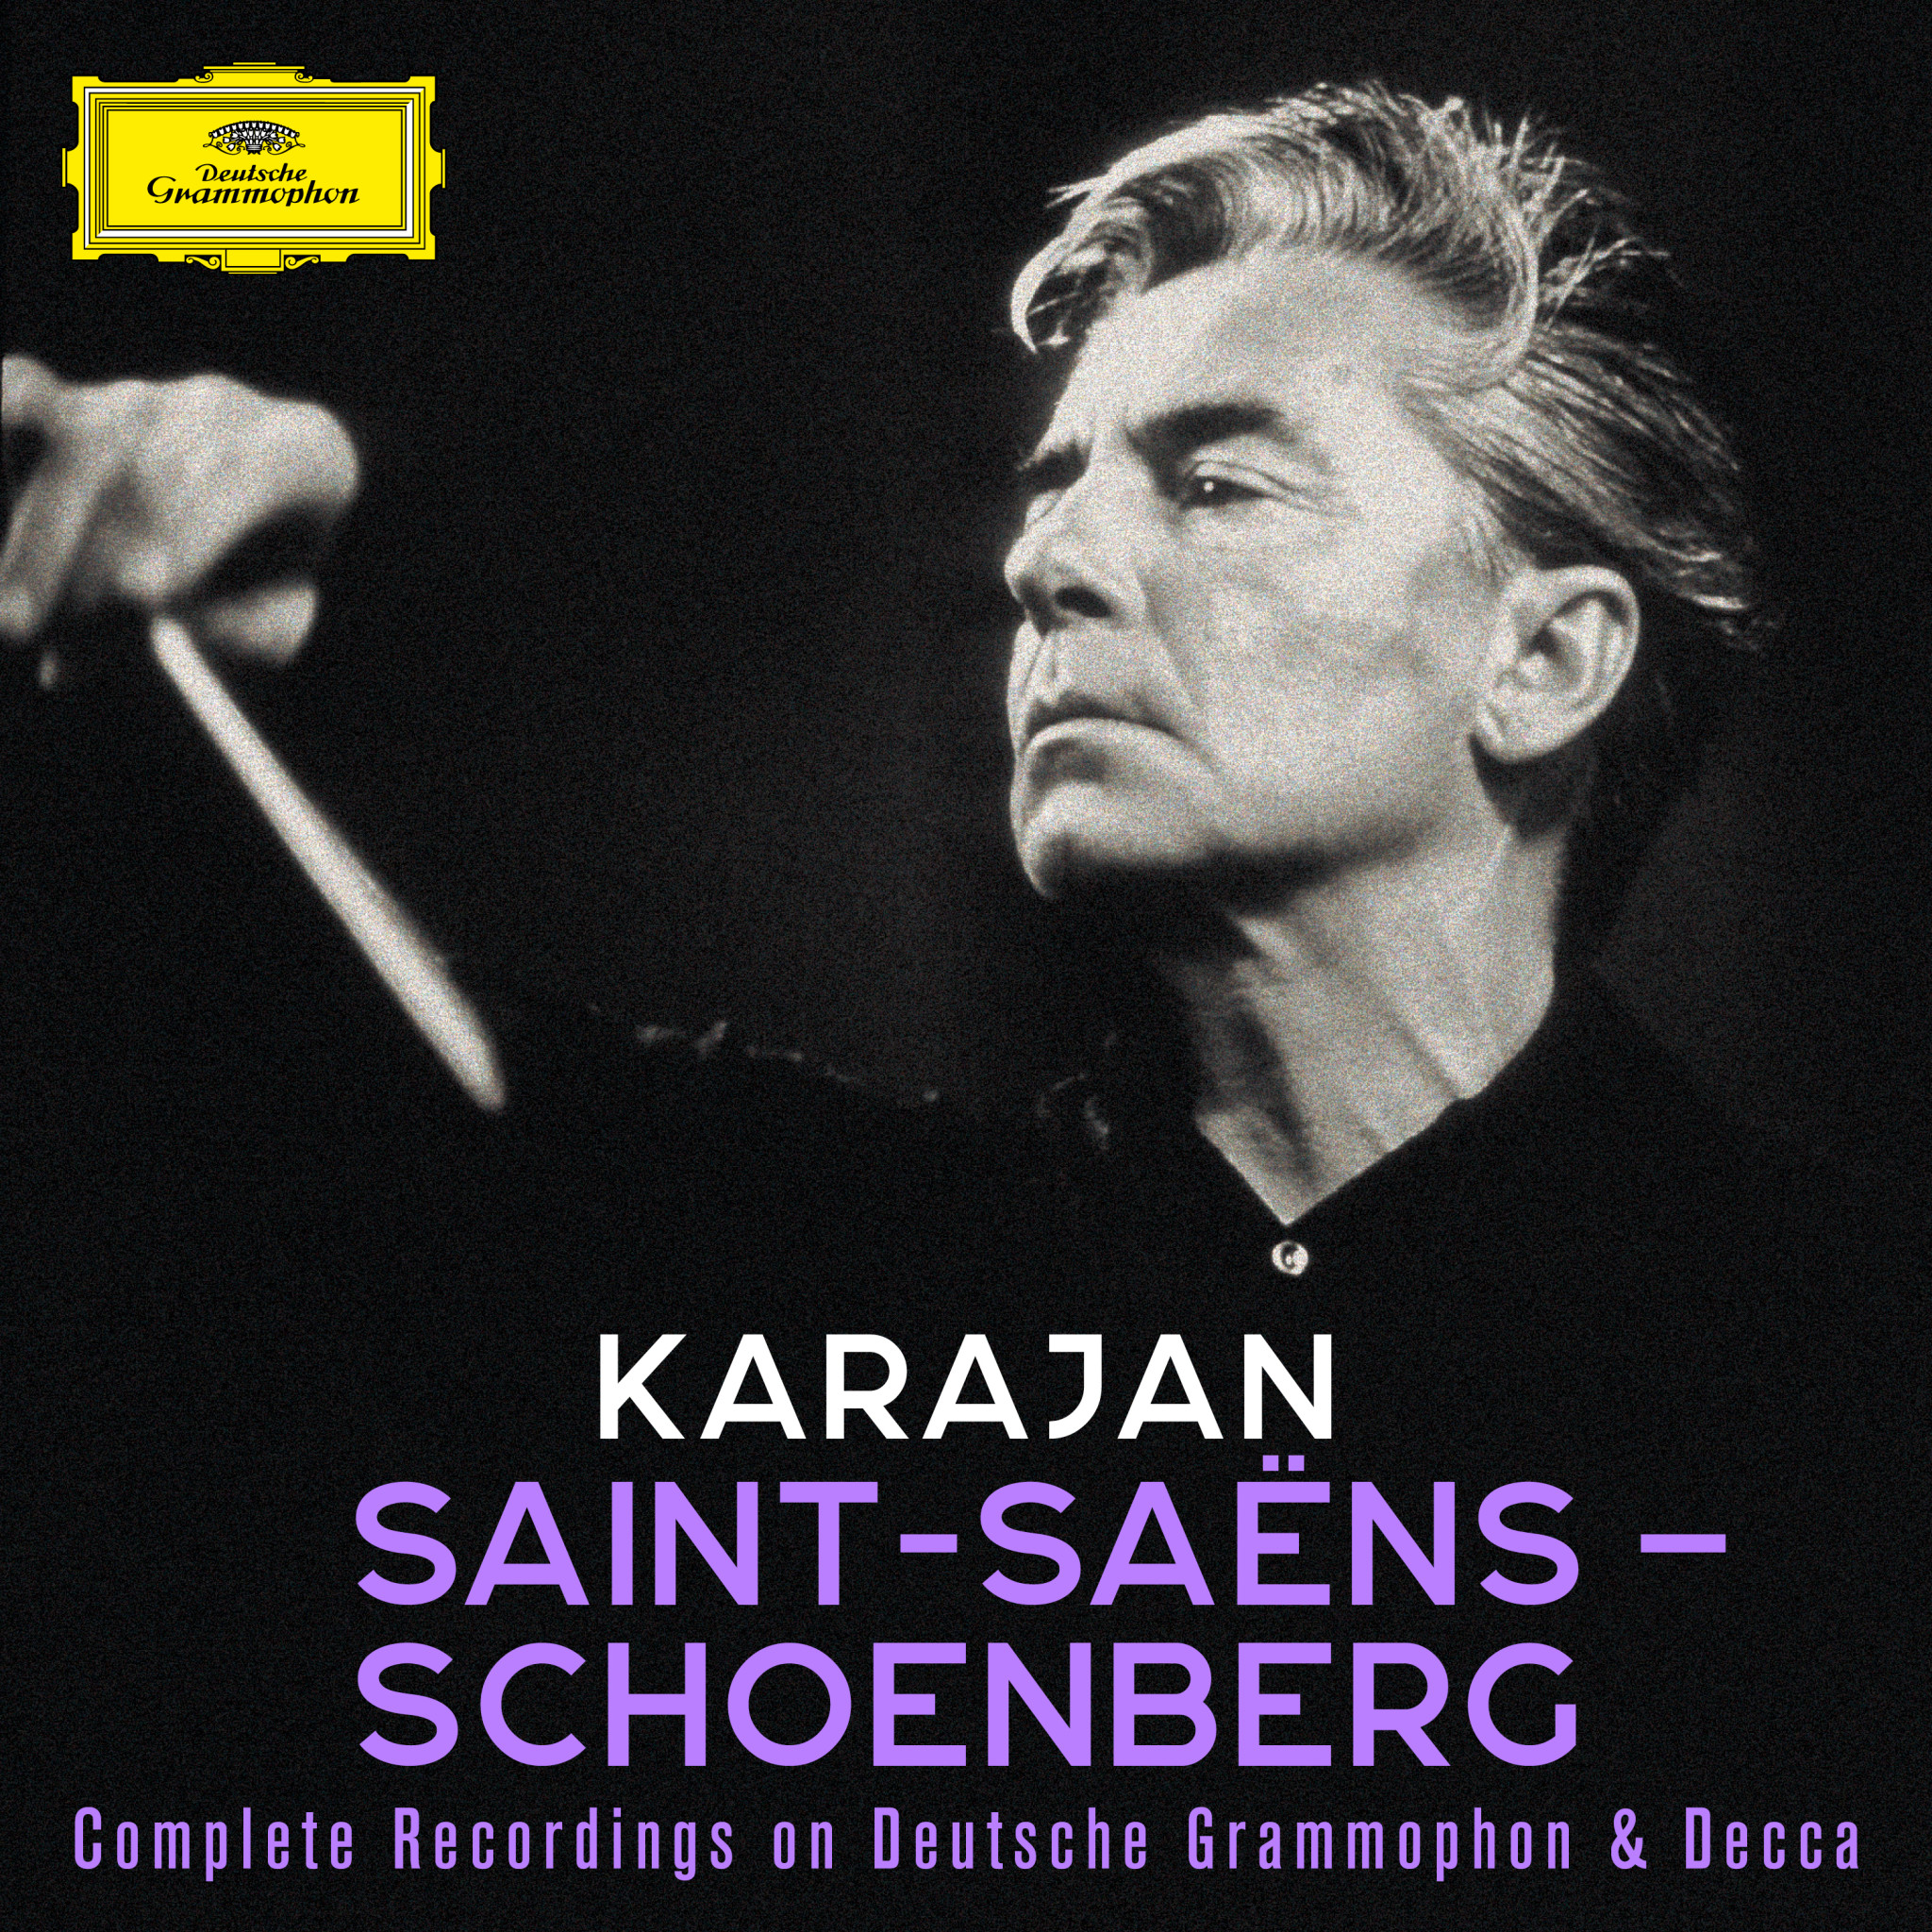 Karajan: Saint-Saëns - Schoenberg